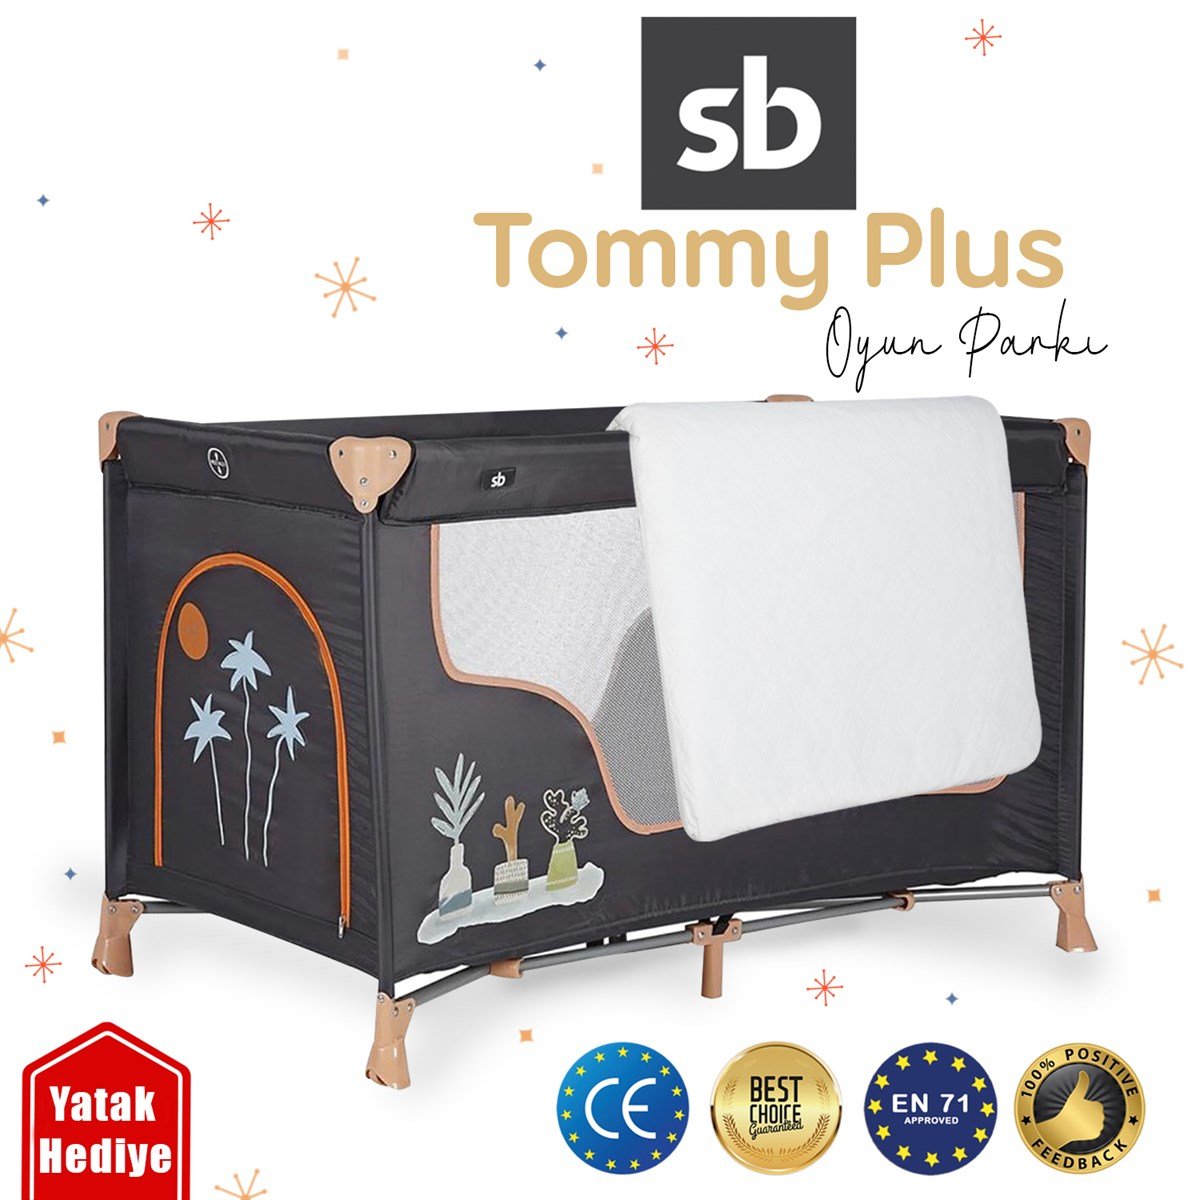 Sunny Baby Tommy Plus Oyun Parkı 60*120 Cm Gri + Yatak Hediyeli - Minimoda